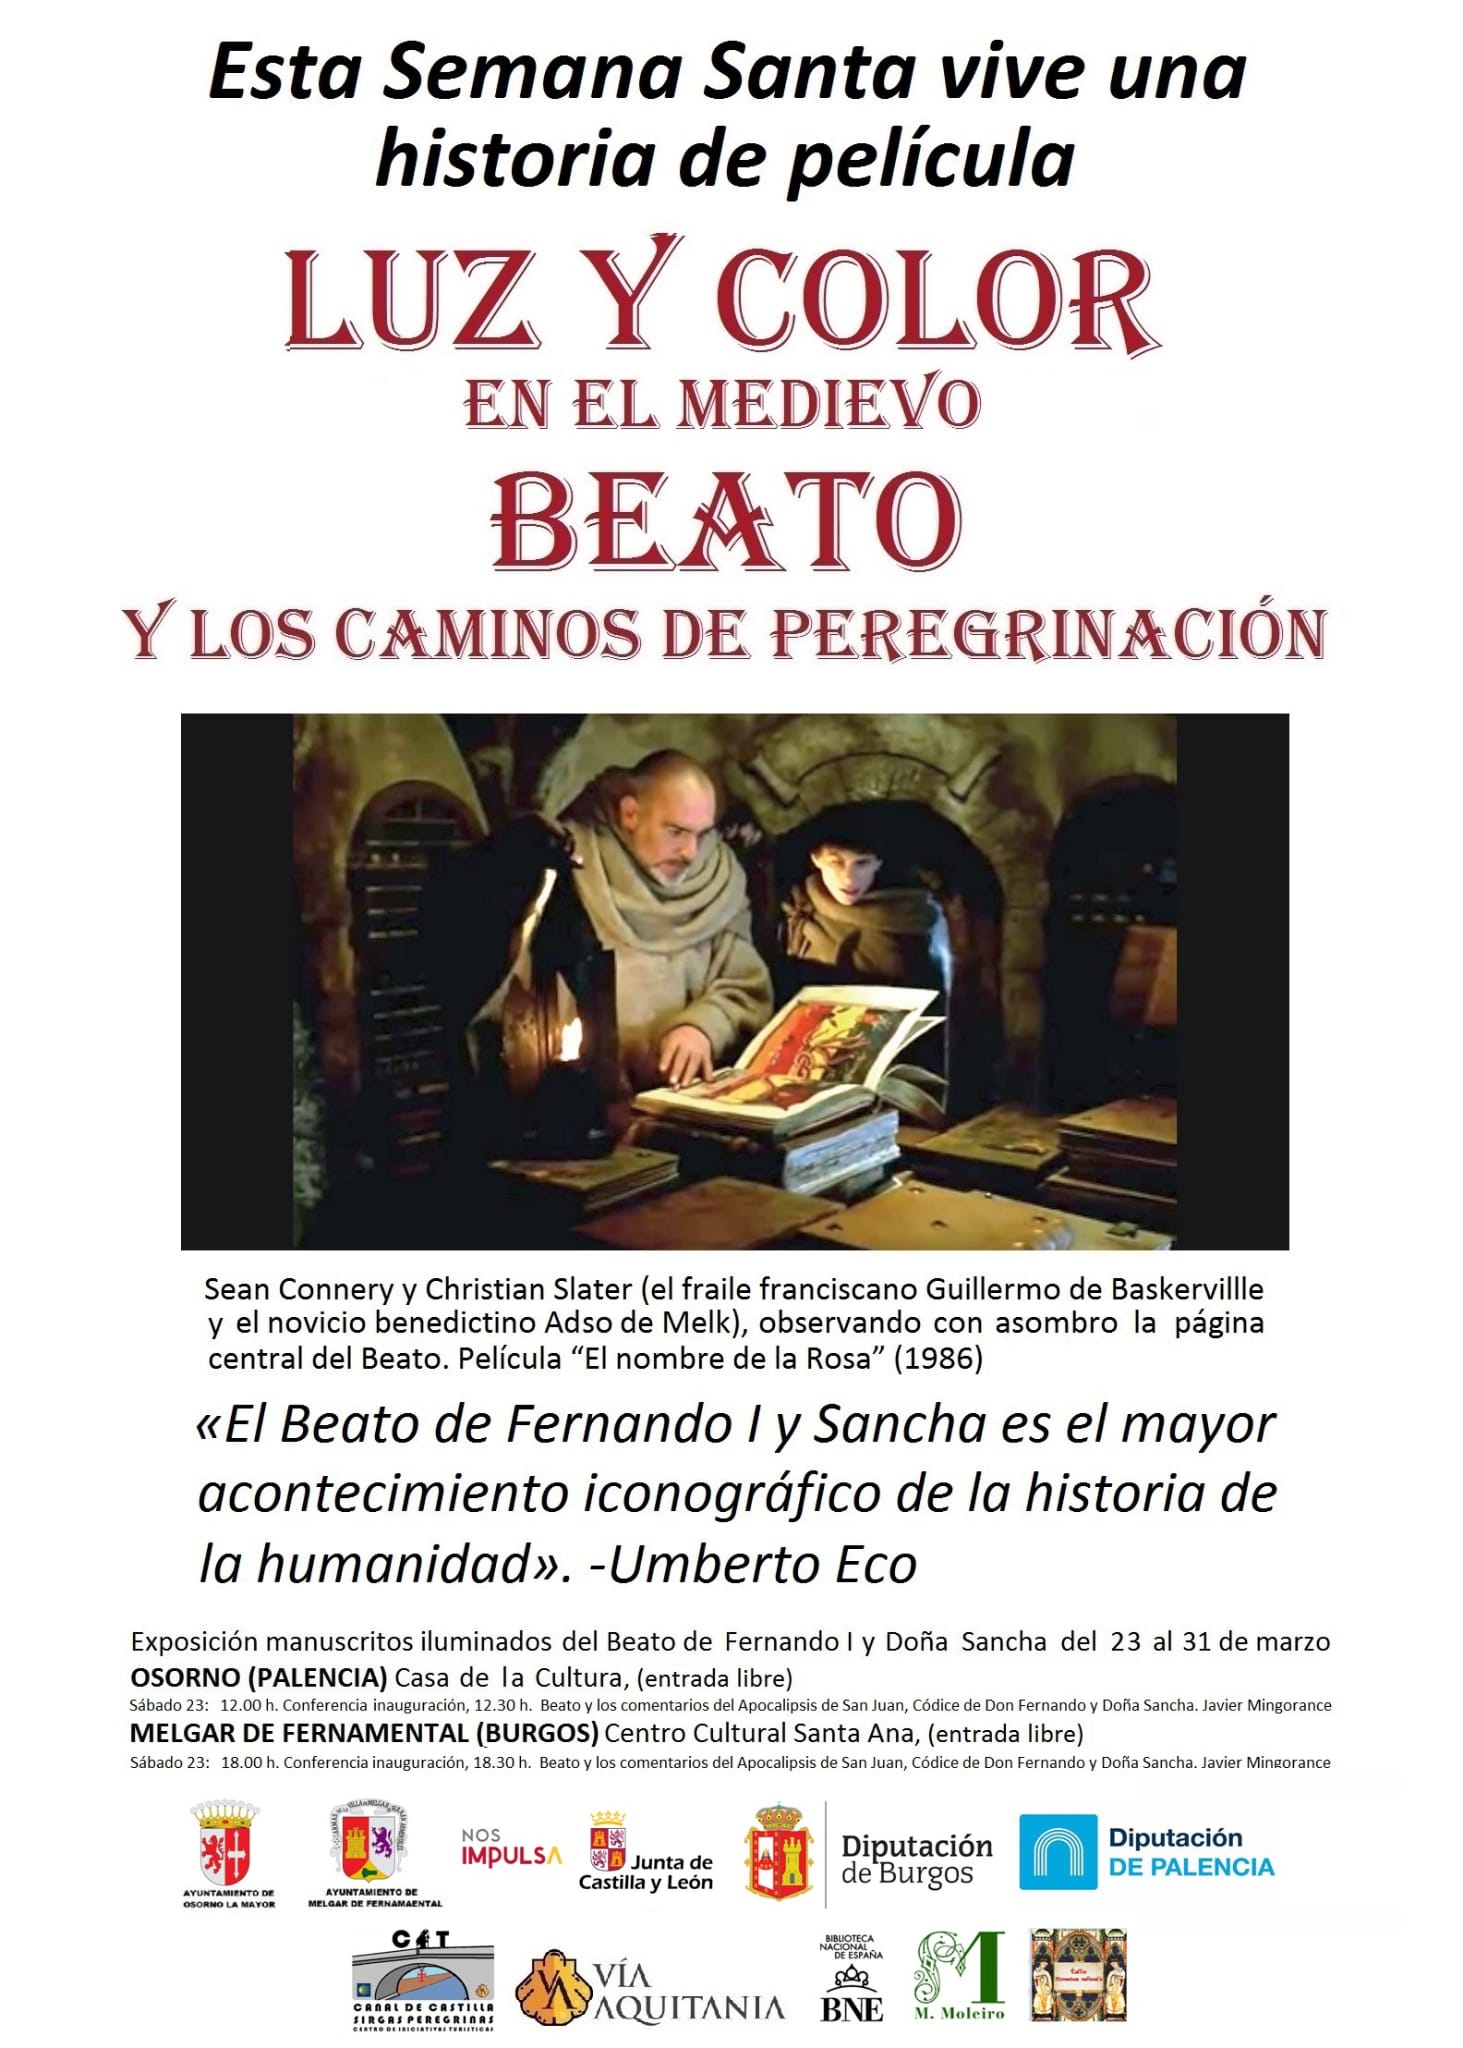 Exposición Manuscritos Iluminados del Beato Fernando y Doña Sancha